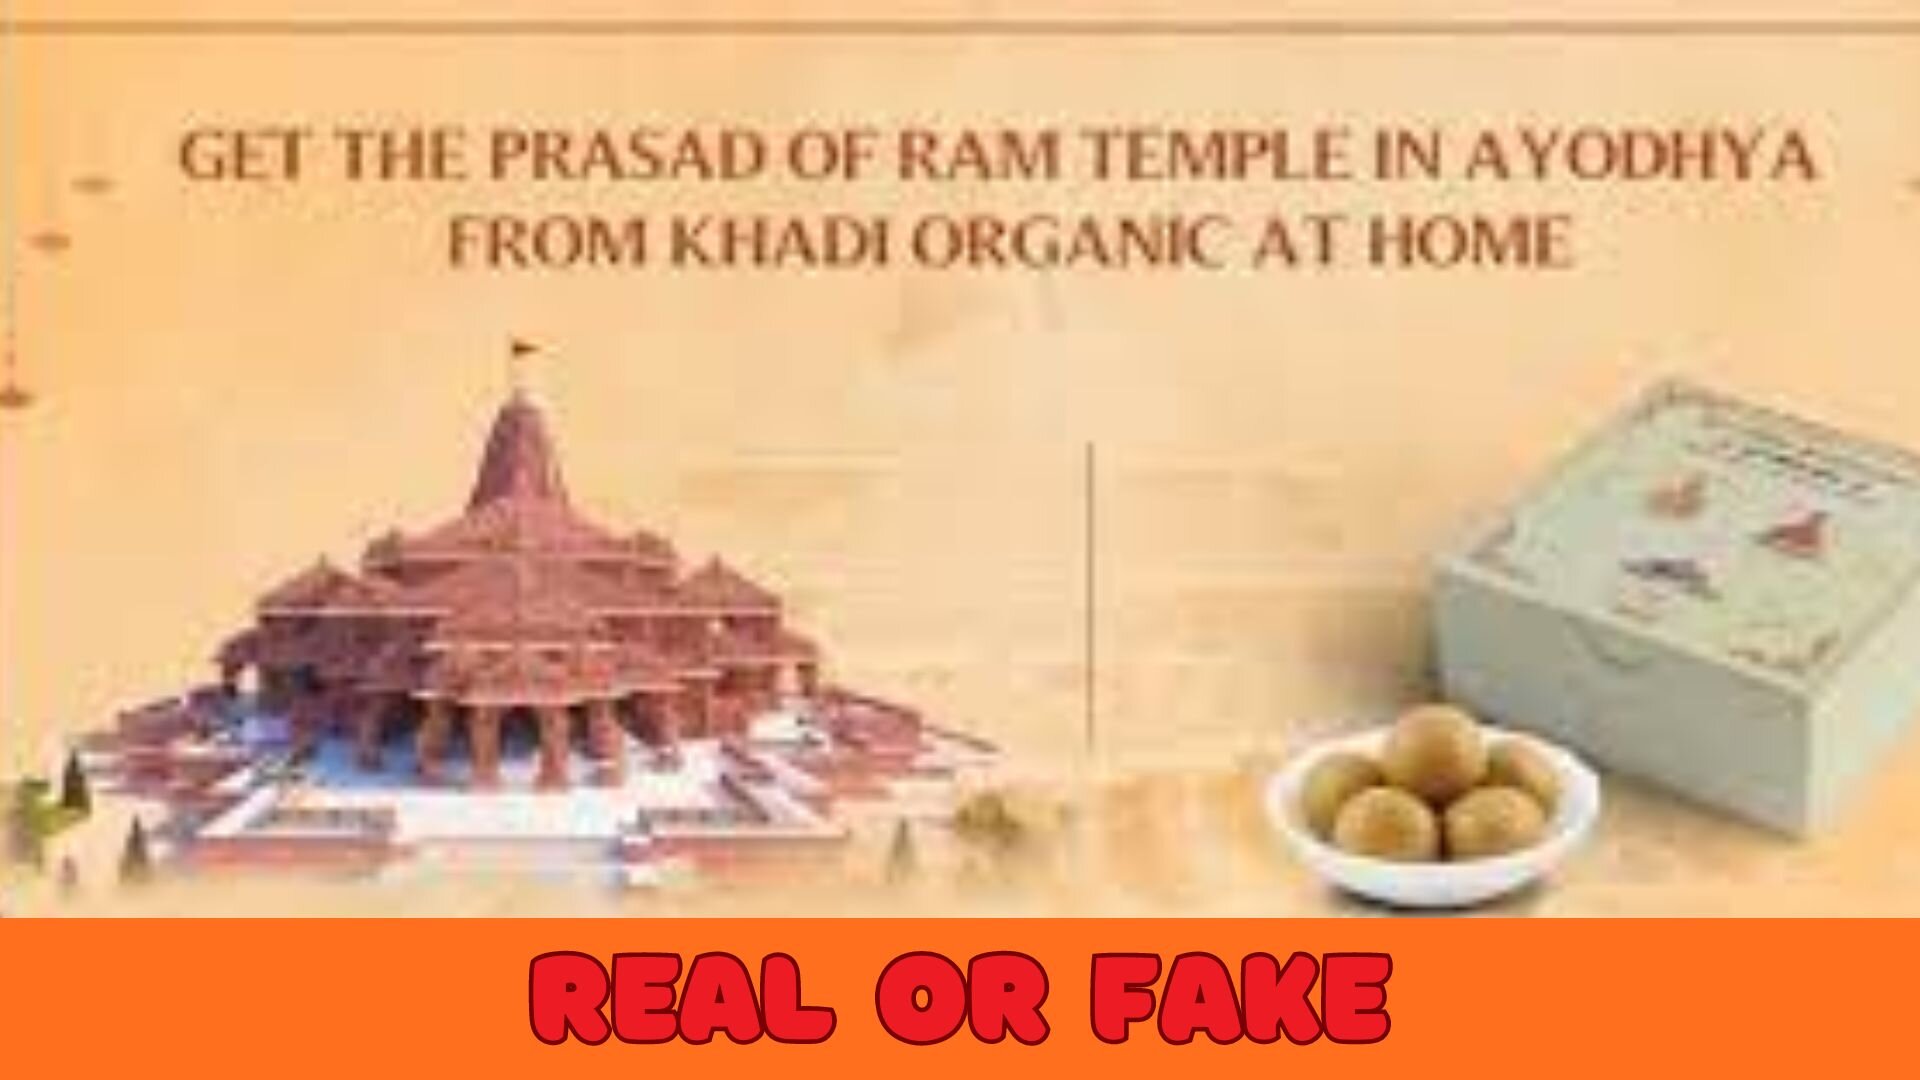 Ram Mandir Free Prasad